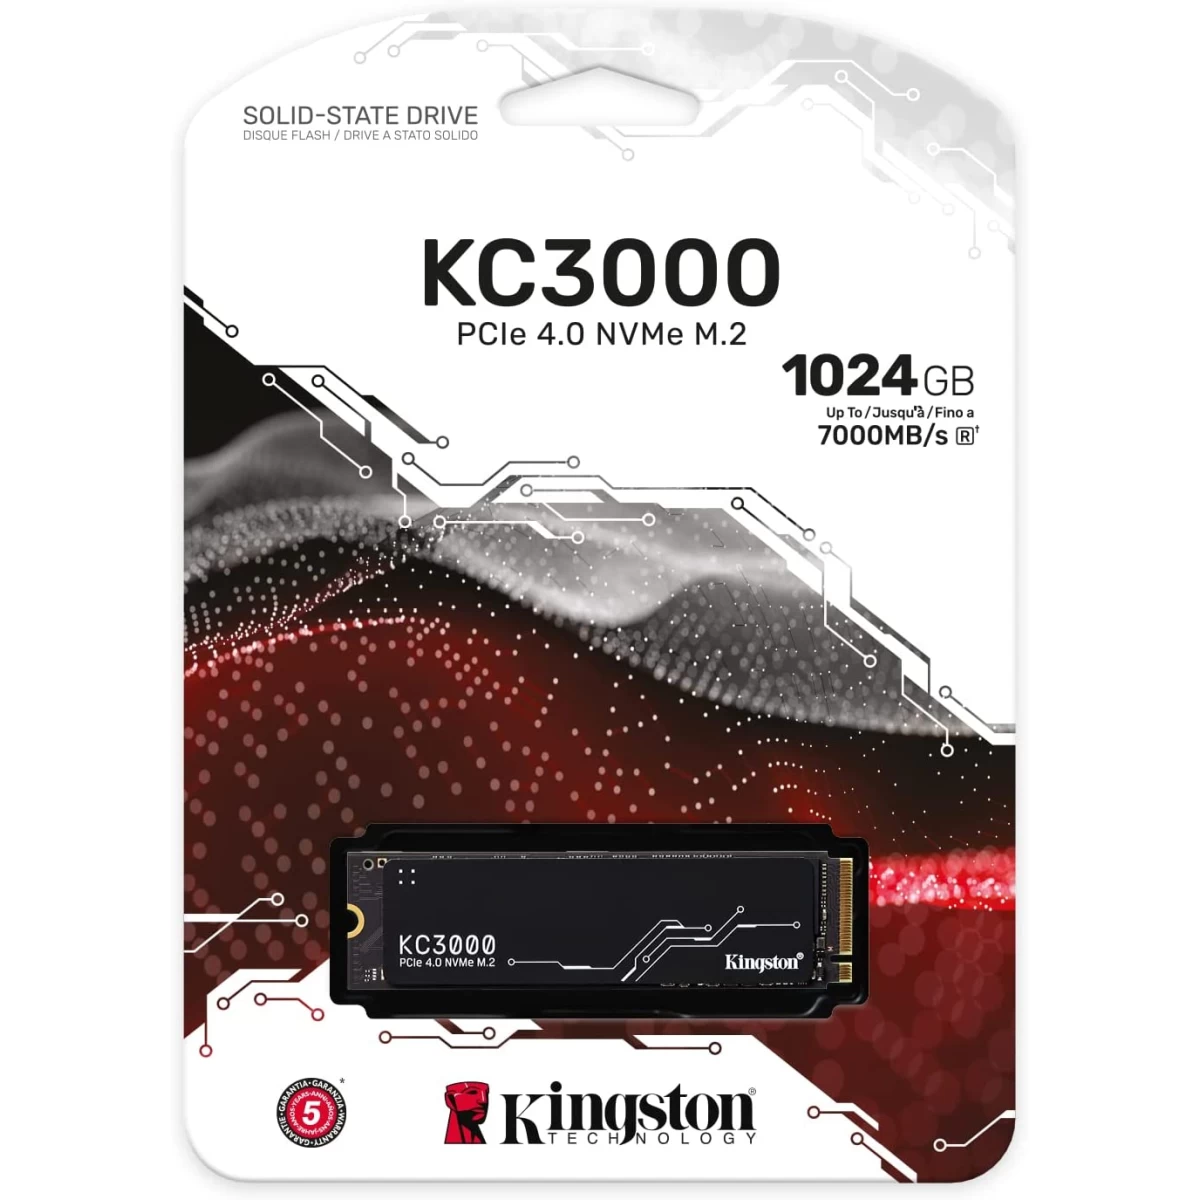 Kingston KC3000 1TB PCIe 4.0 NVMe M.2 SSD Photo